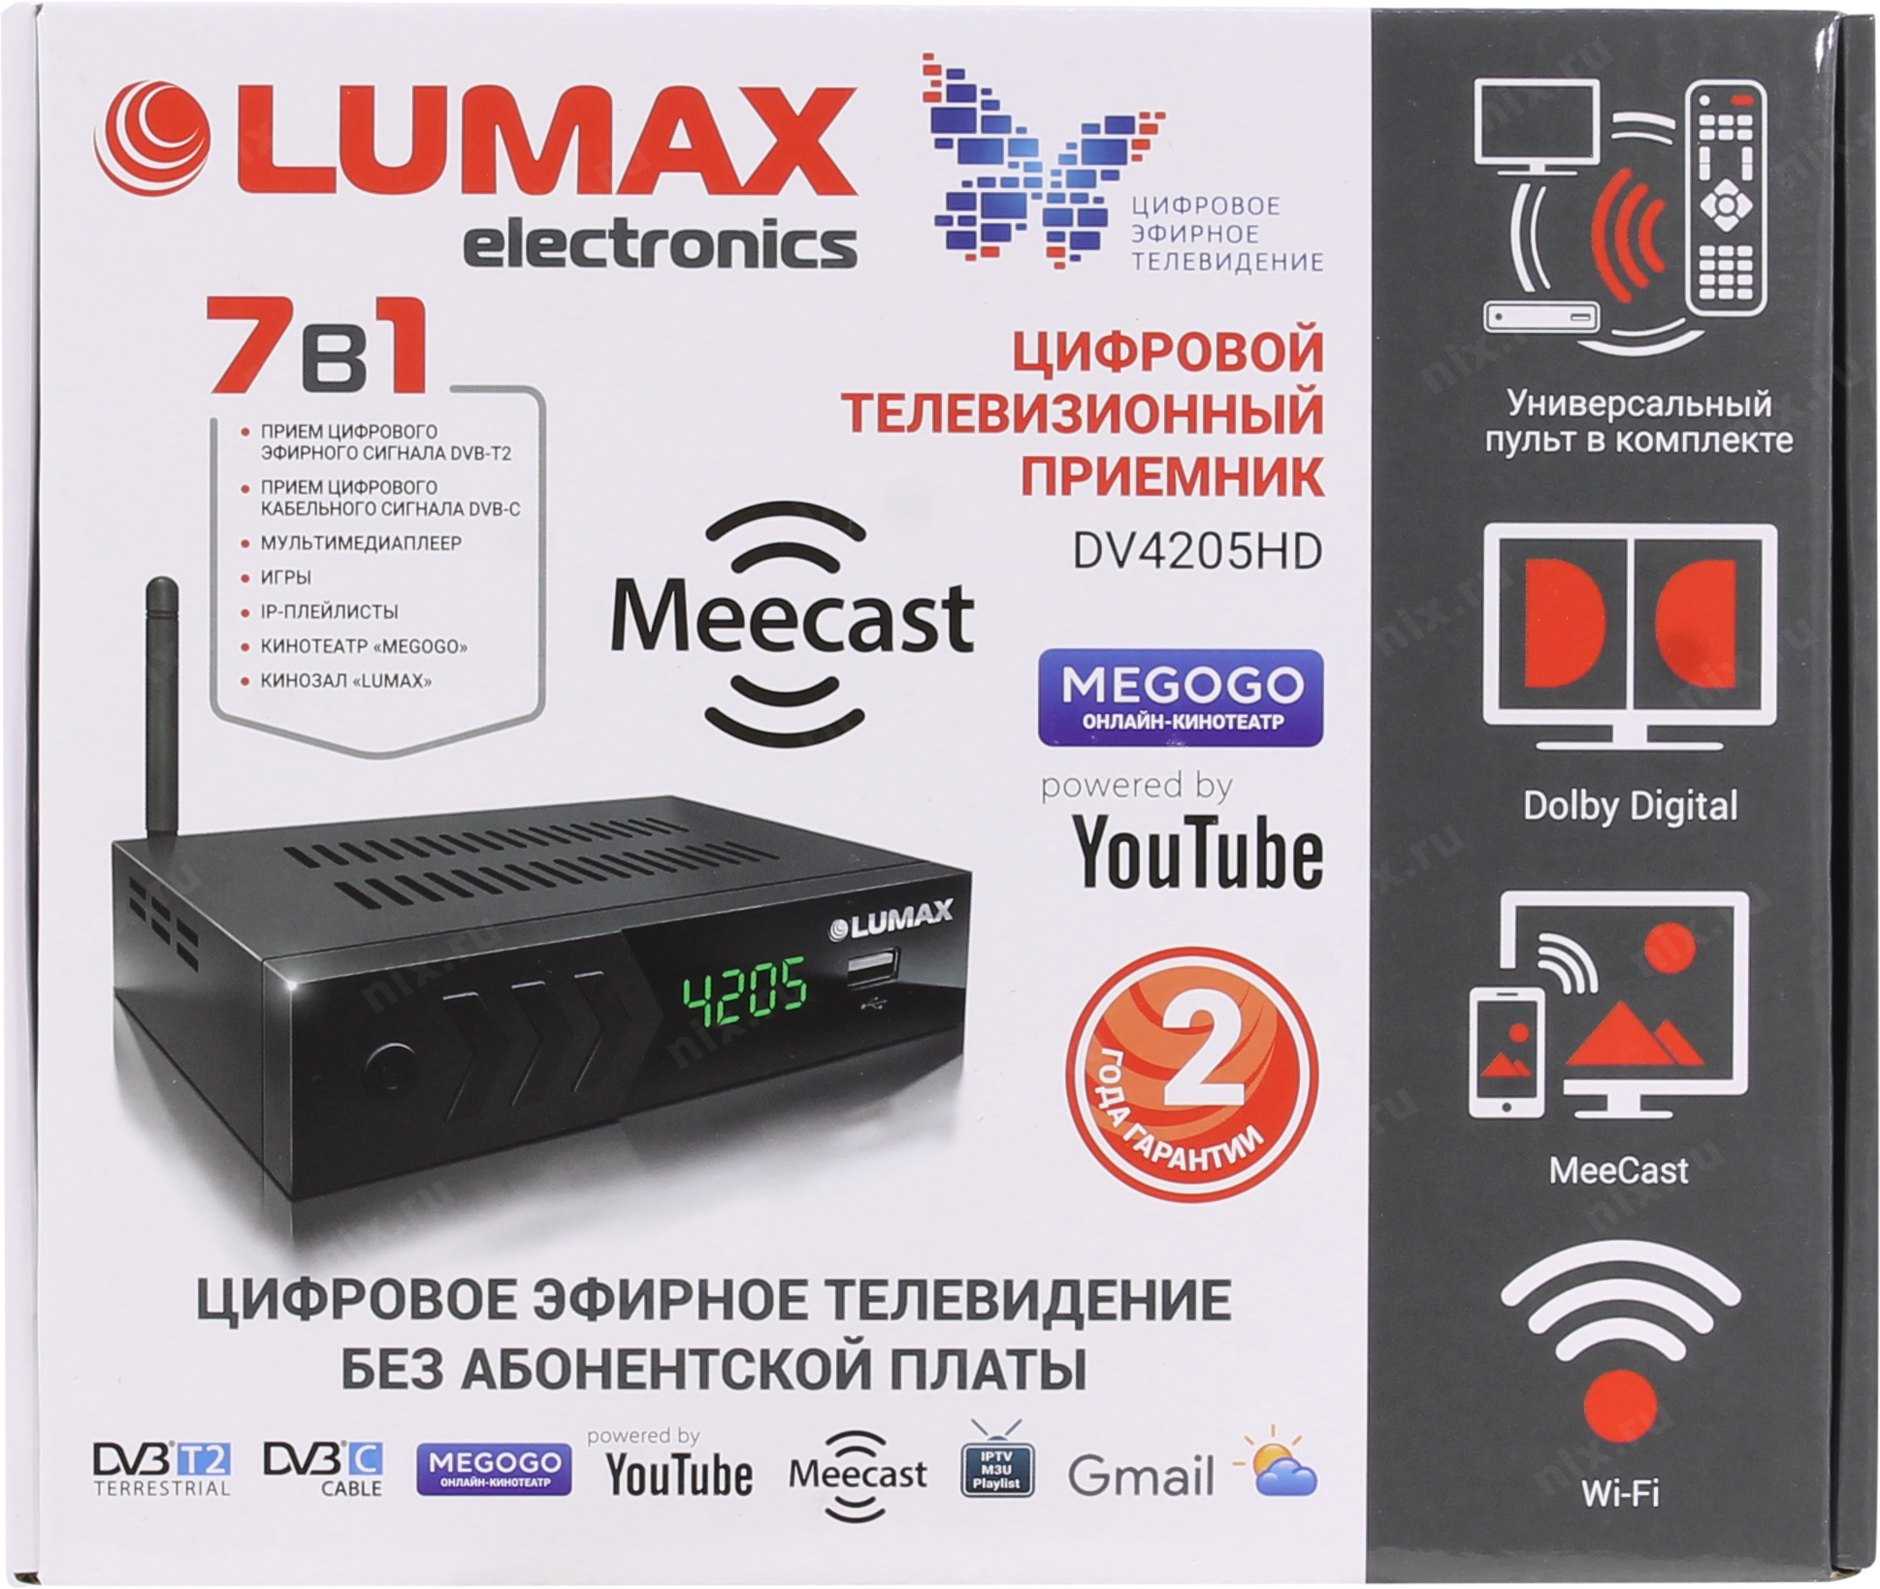 Как подключить и настроить приставку lumax к телевизору: пошаговая инструкция